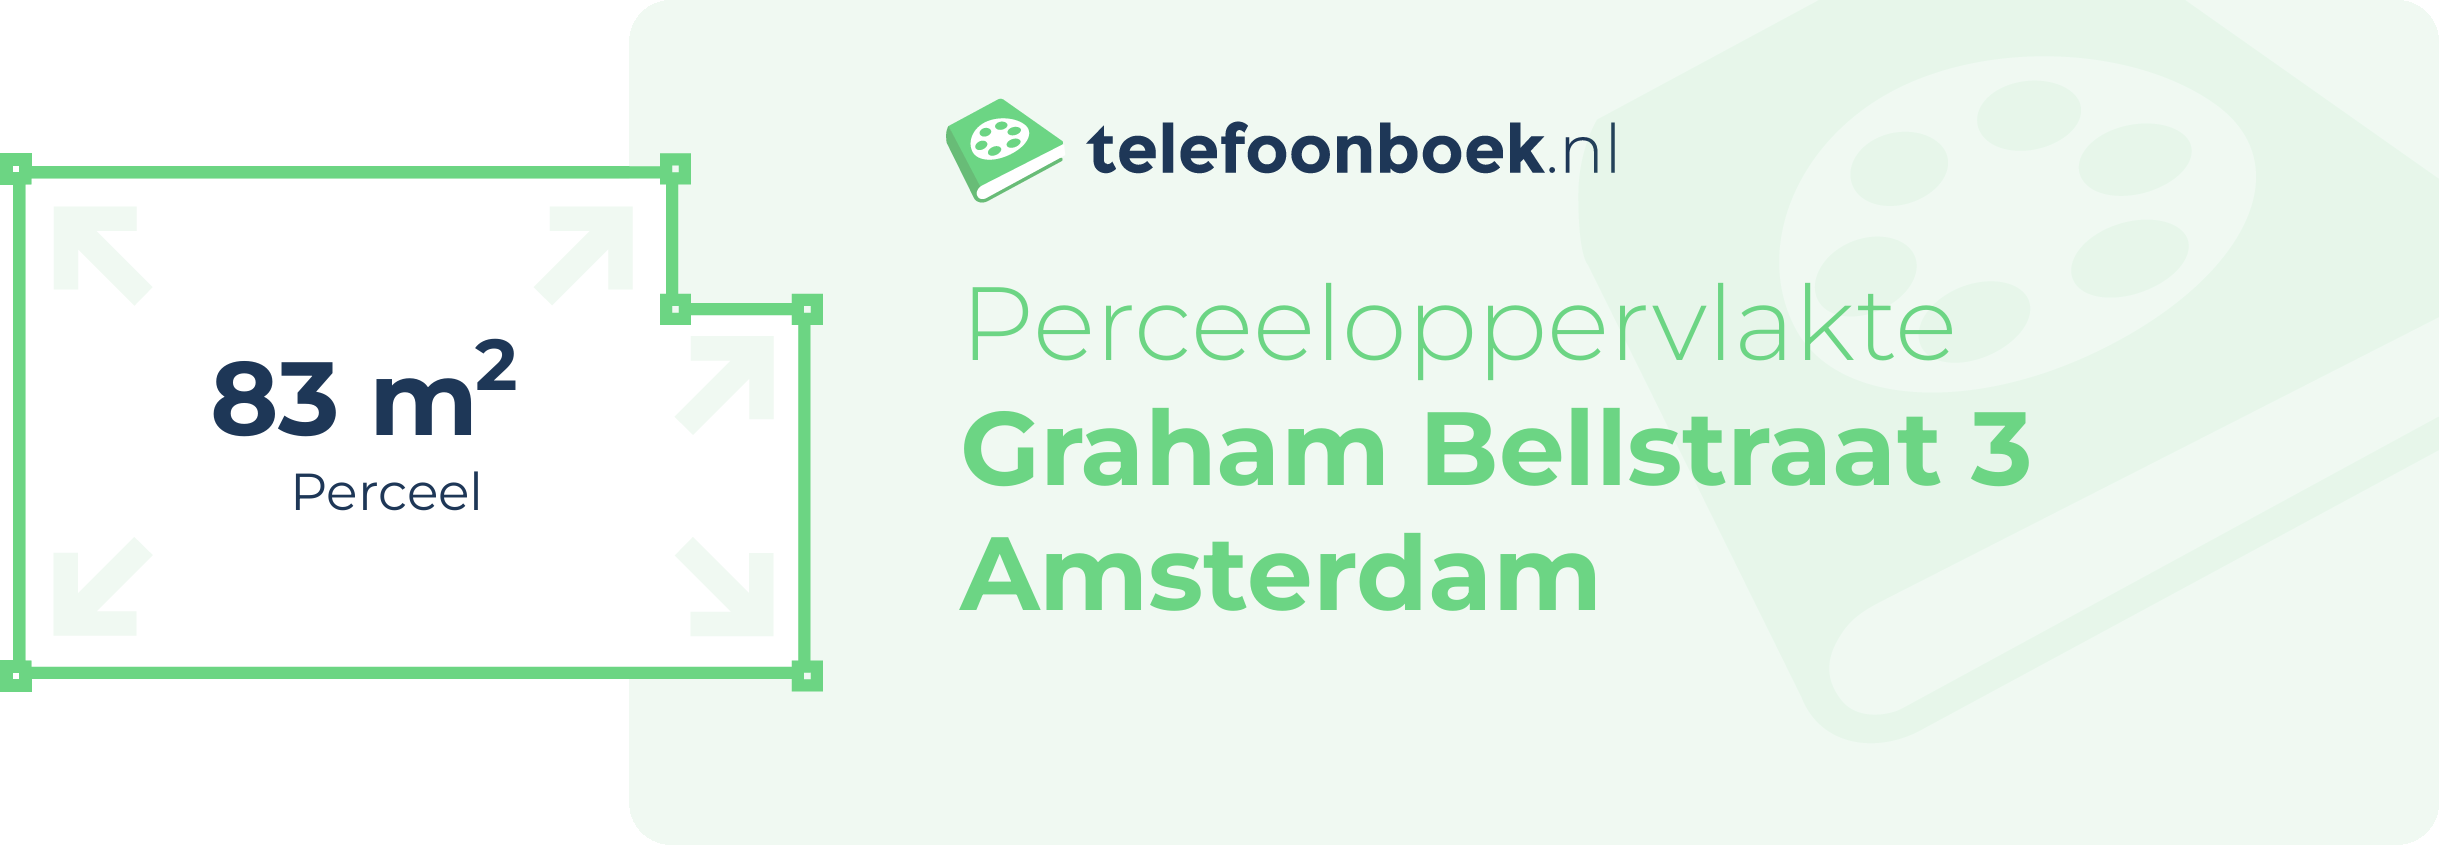 Perceeloppervlakte Graham Bellstraat 3 Amsterdam